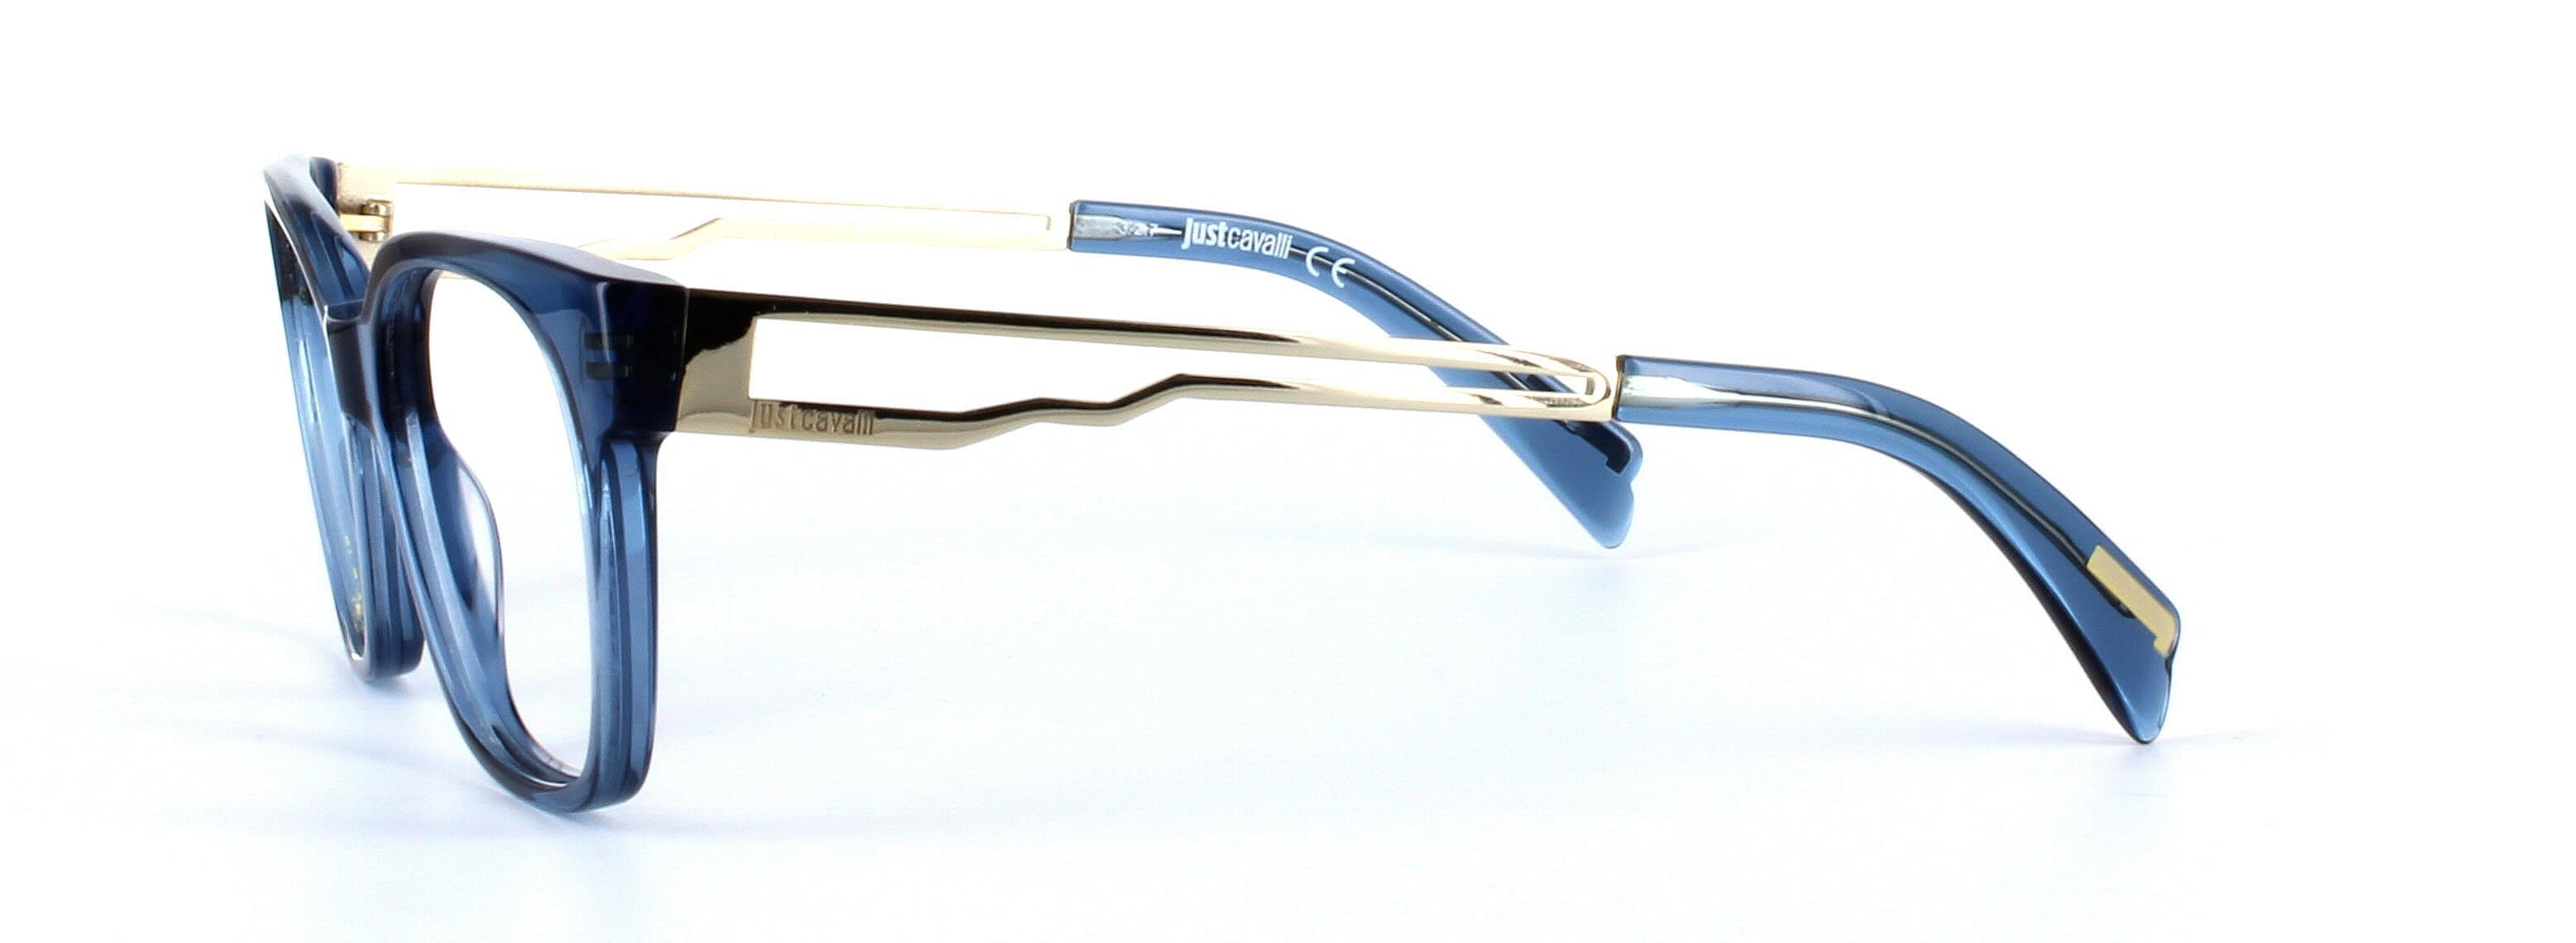 JUST CAVALLI (JC0801) Blue Full Rim Square Acetate Glasses - Image View 2